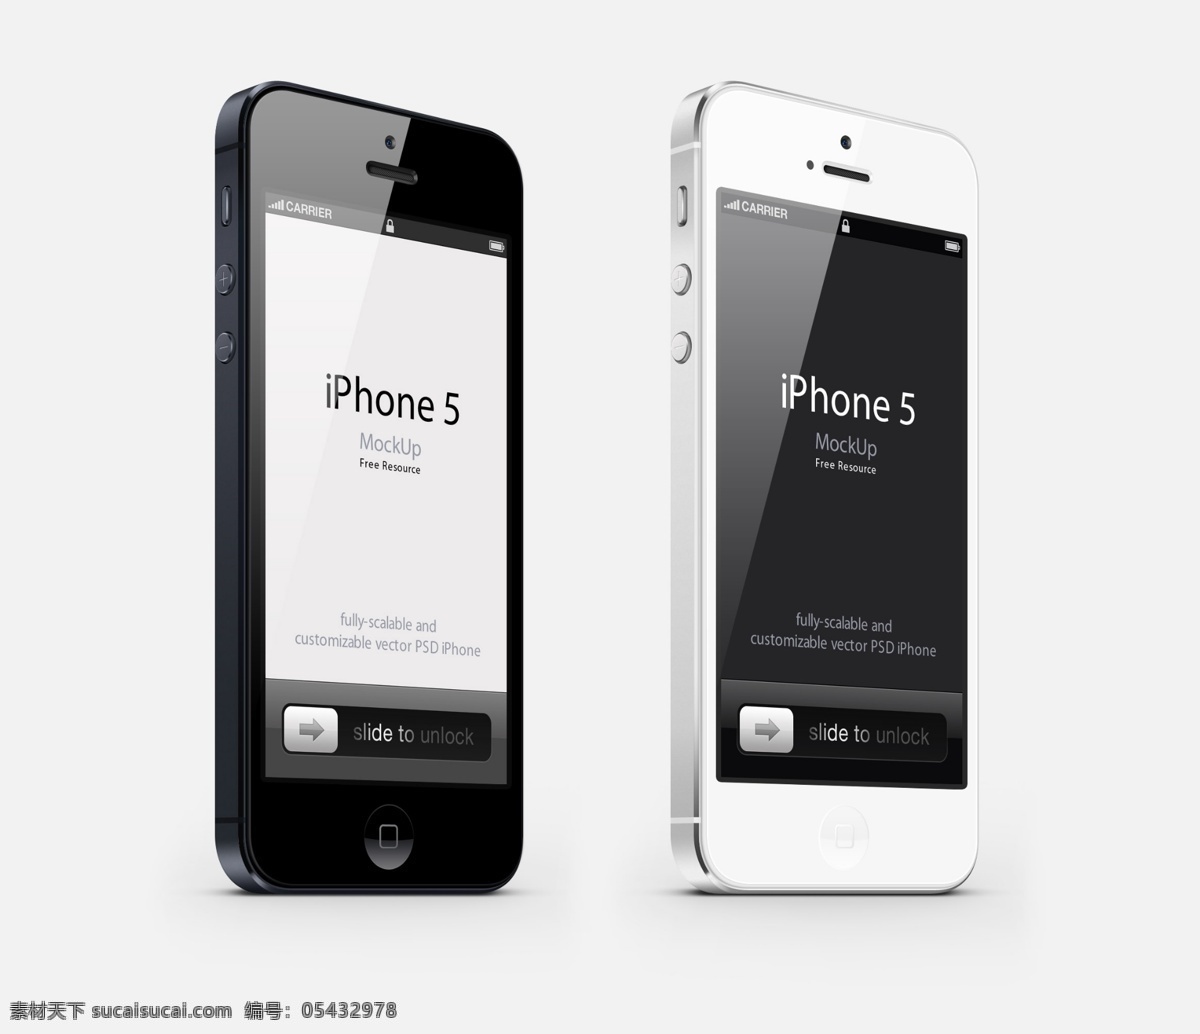 苹果 iphone5 苹果手机 智能手机 触屏手机 iphone 时尚 旗舰手机 美国 手机 通信器材 数码家电 数码产品 现代科技 白色